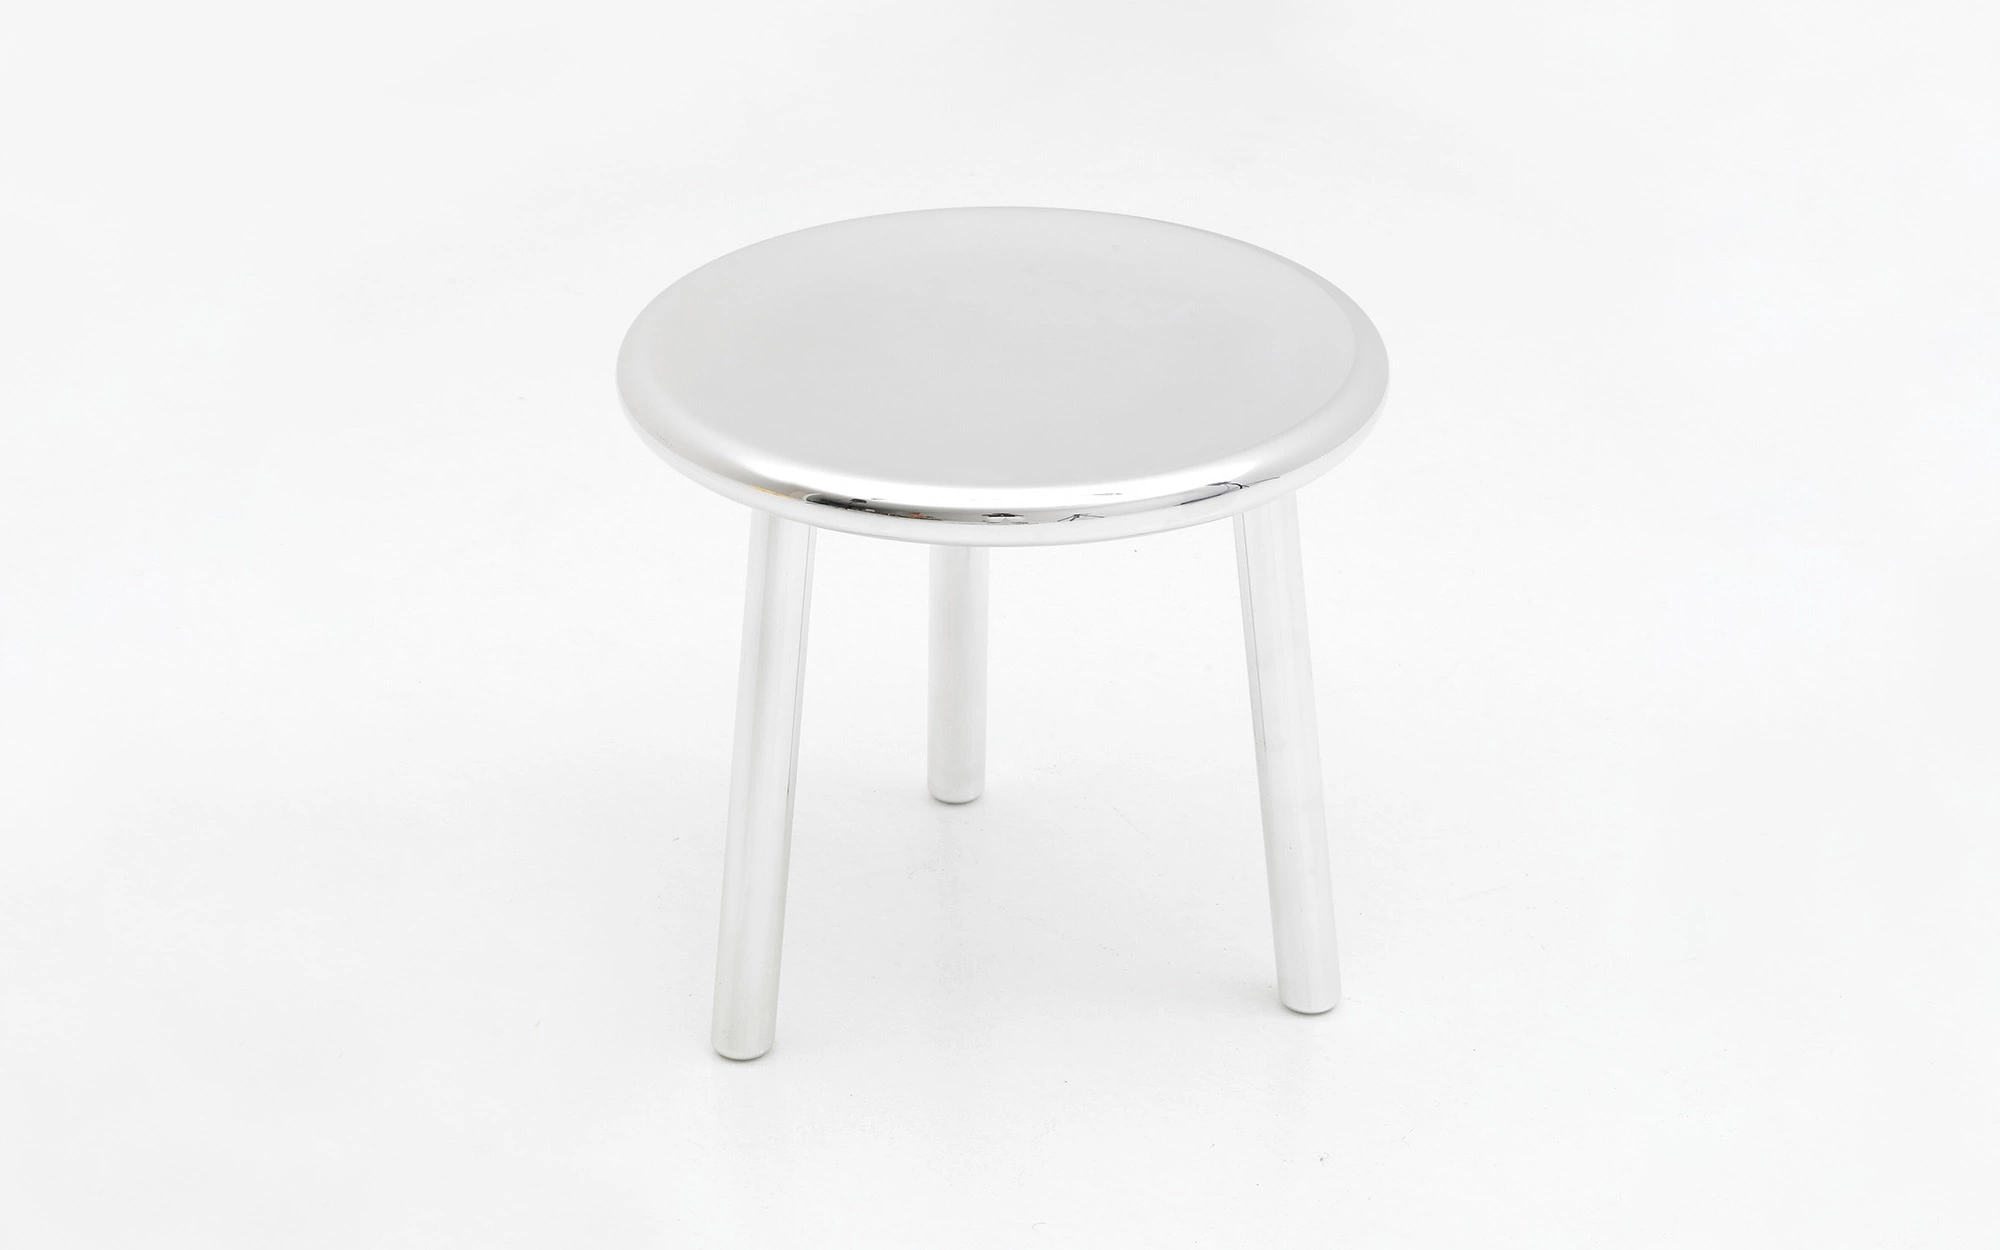 3-legged stool - Jasper Morrison - Table - Galerie kreo